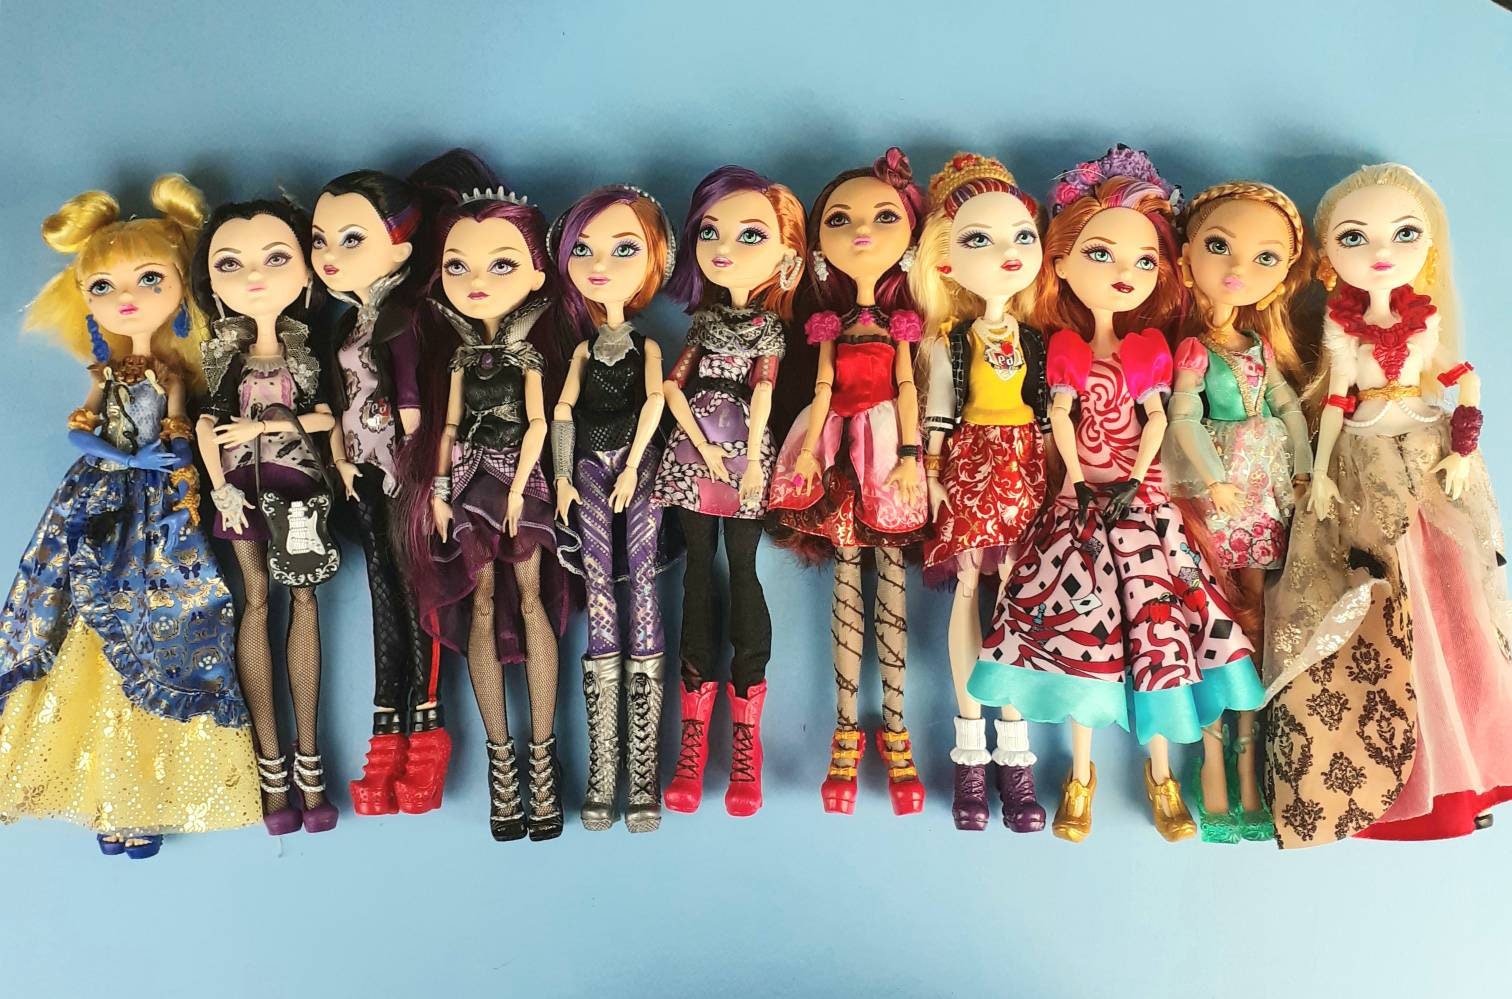 Coleção de Bonecas Basicas Ever After High (Ever After High basic dolls  collection) 